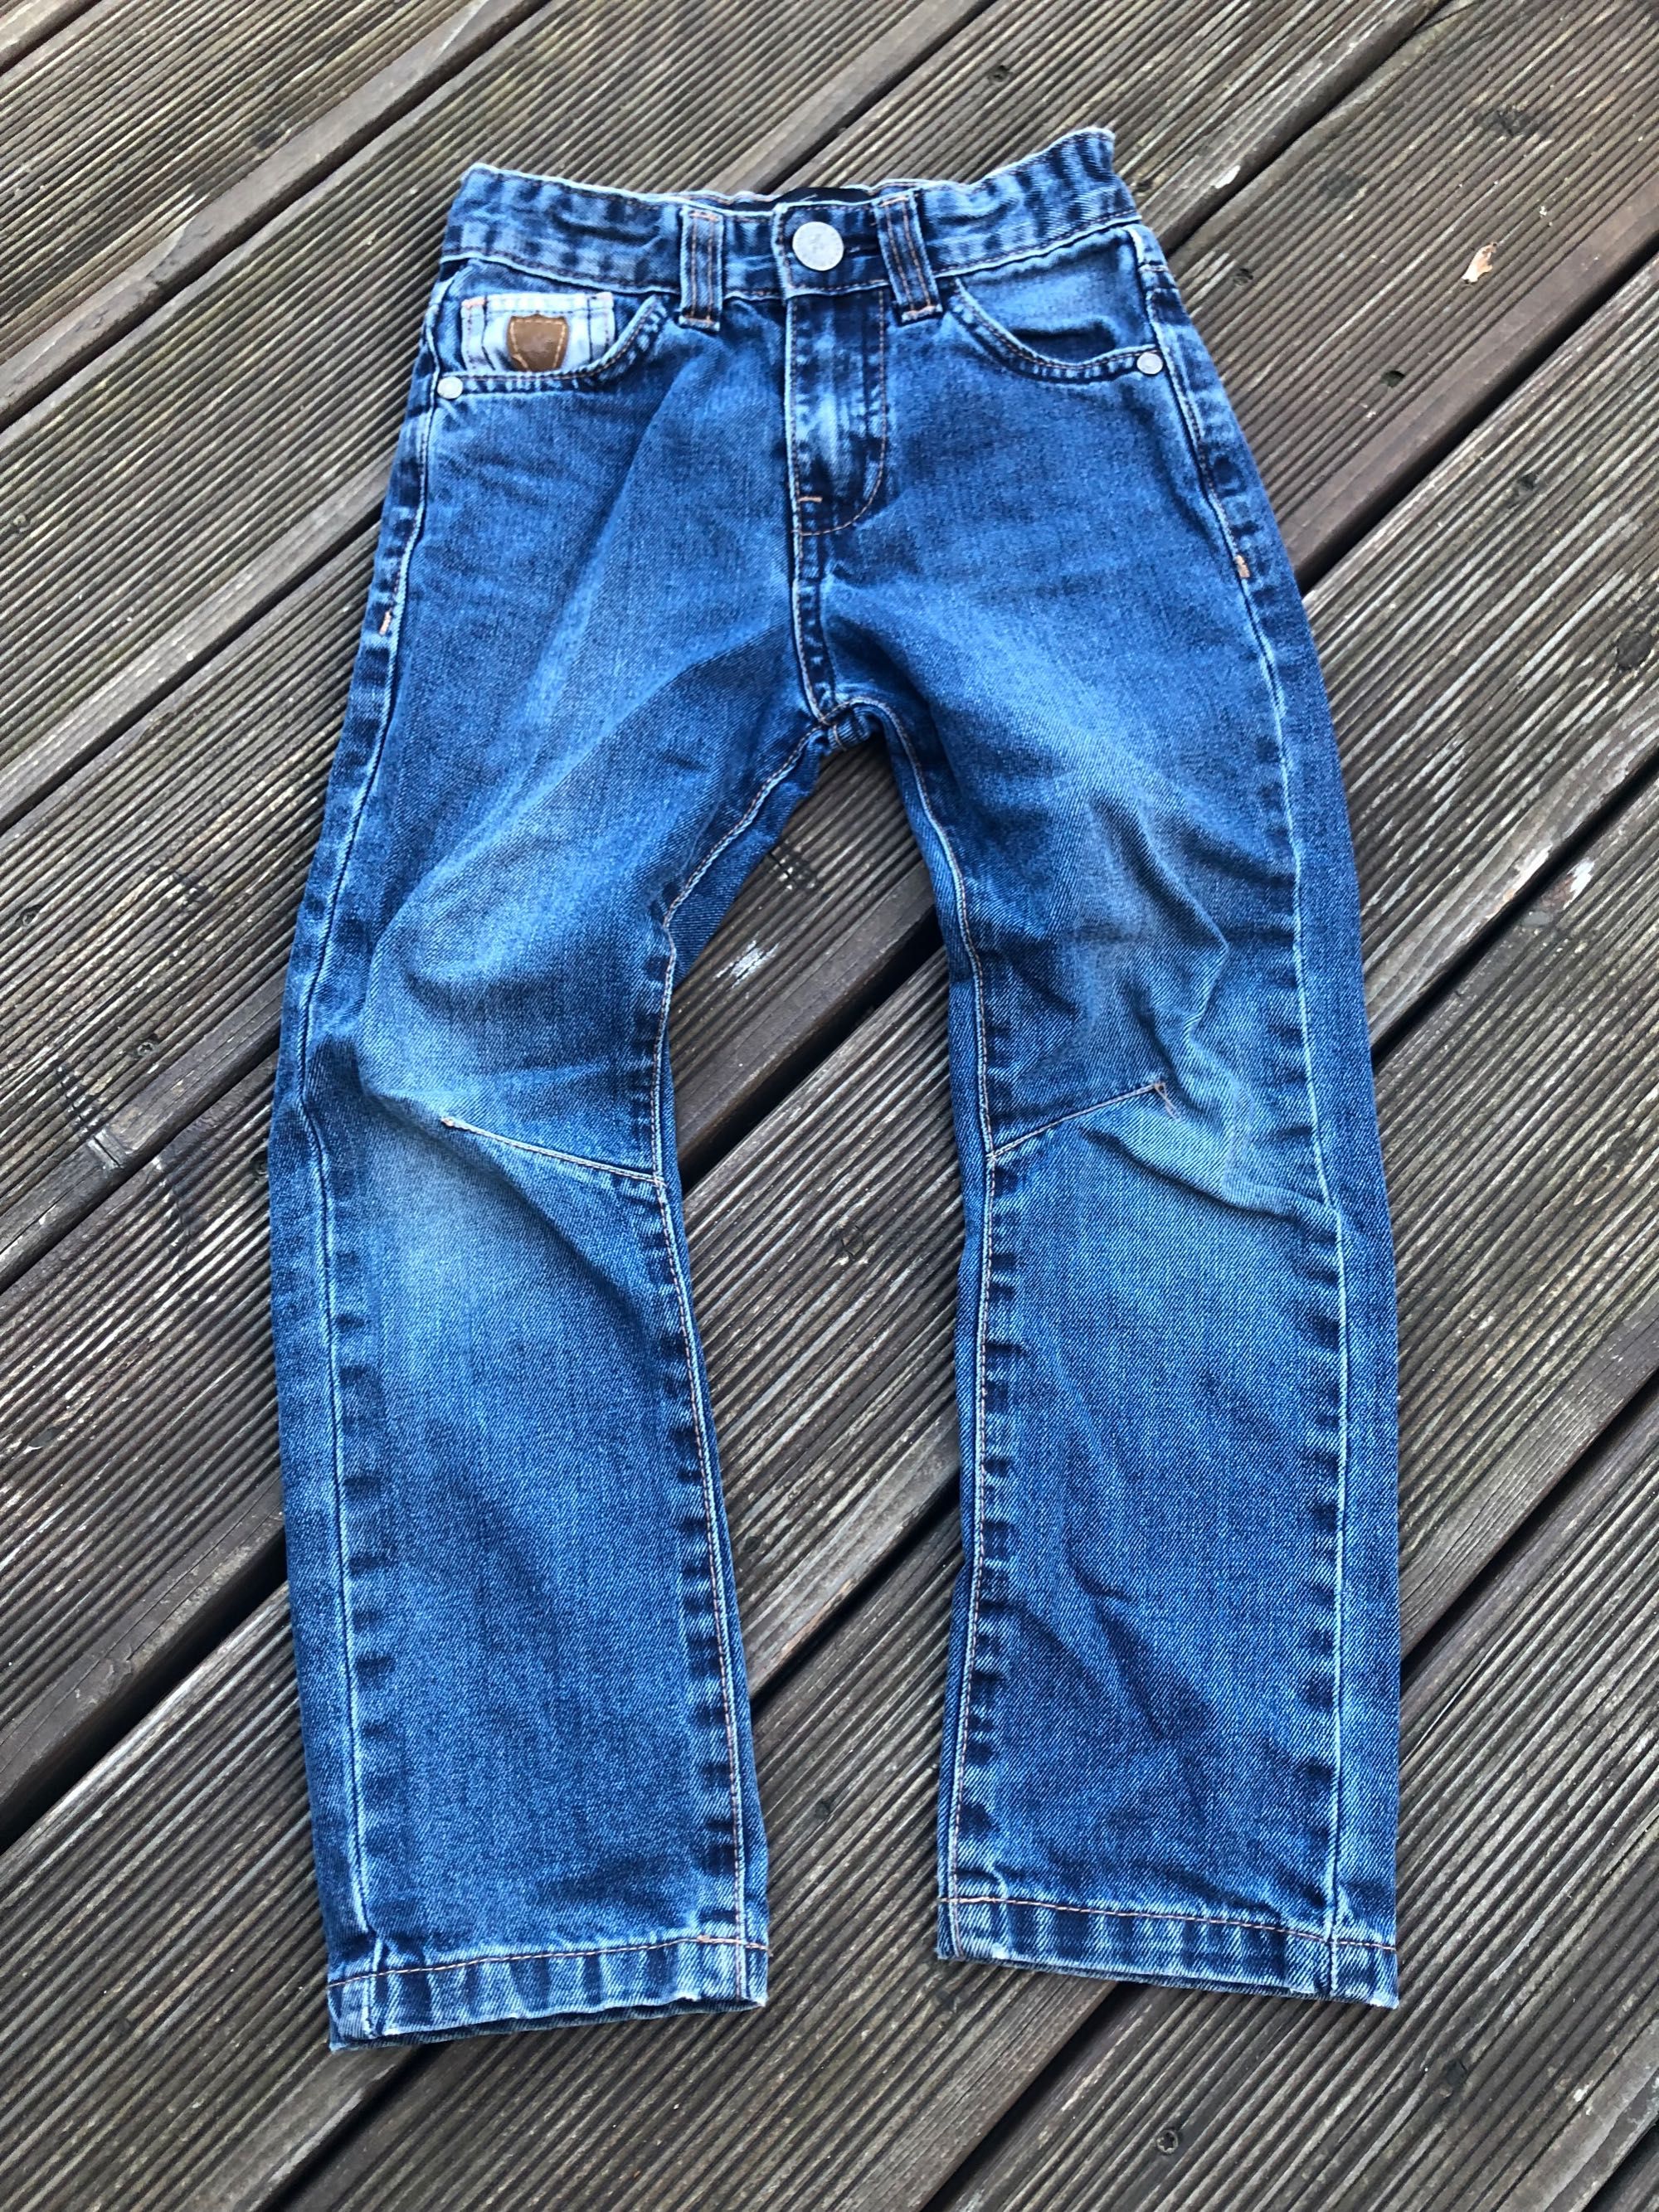 Beverly Hills Polo Club spodnie jeans bliźniaki bliźnięta 110 116